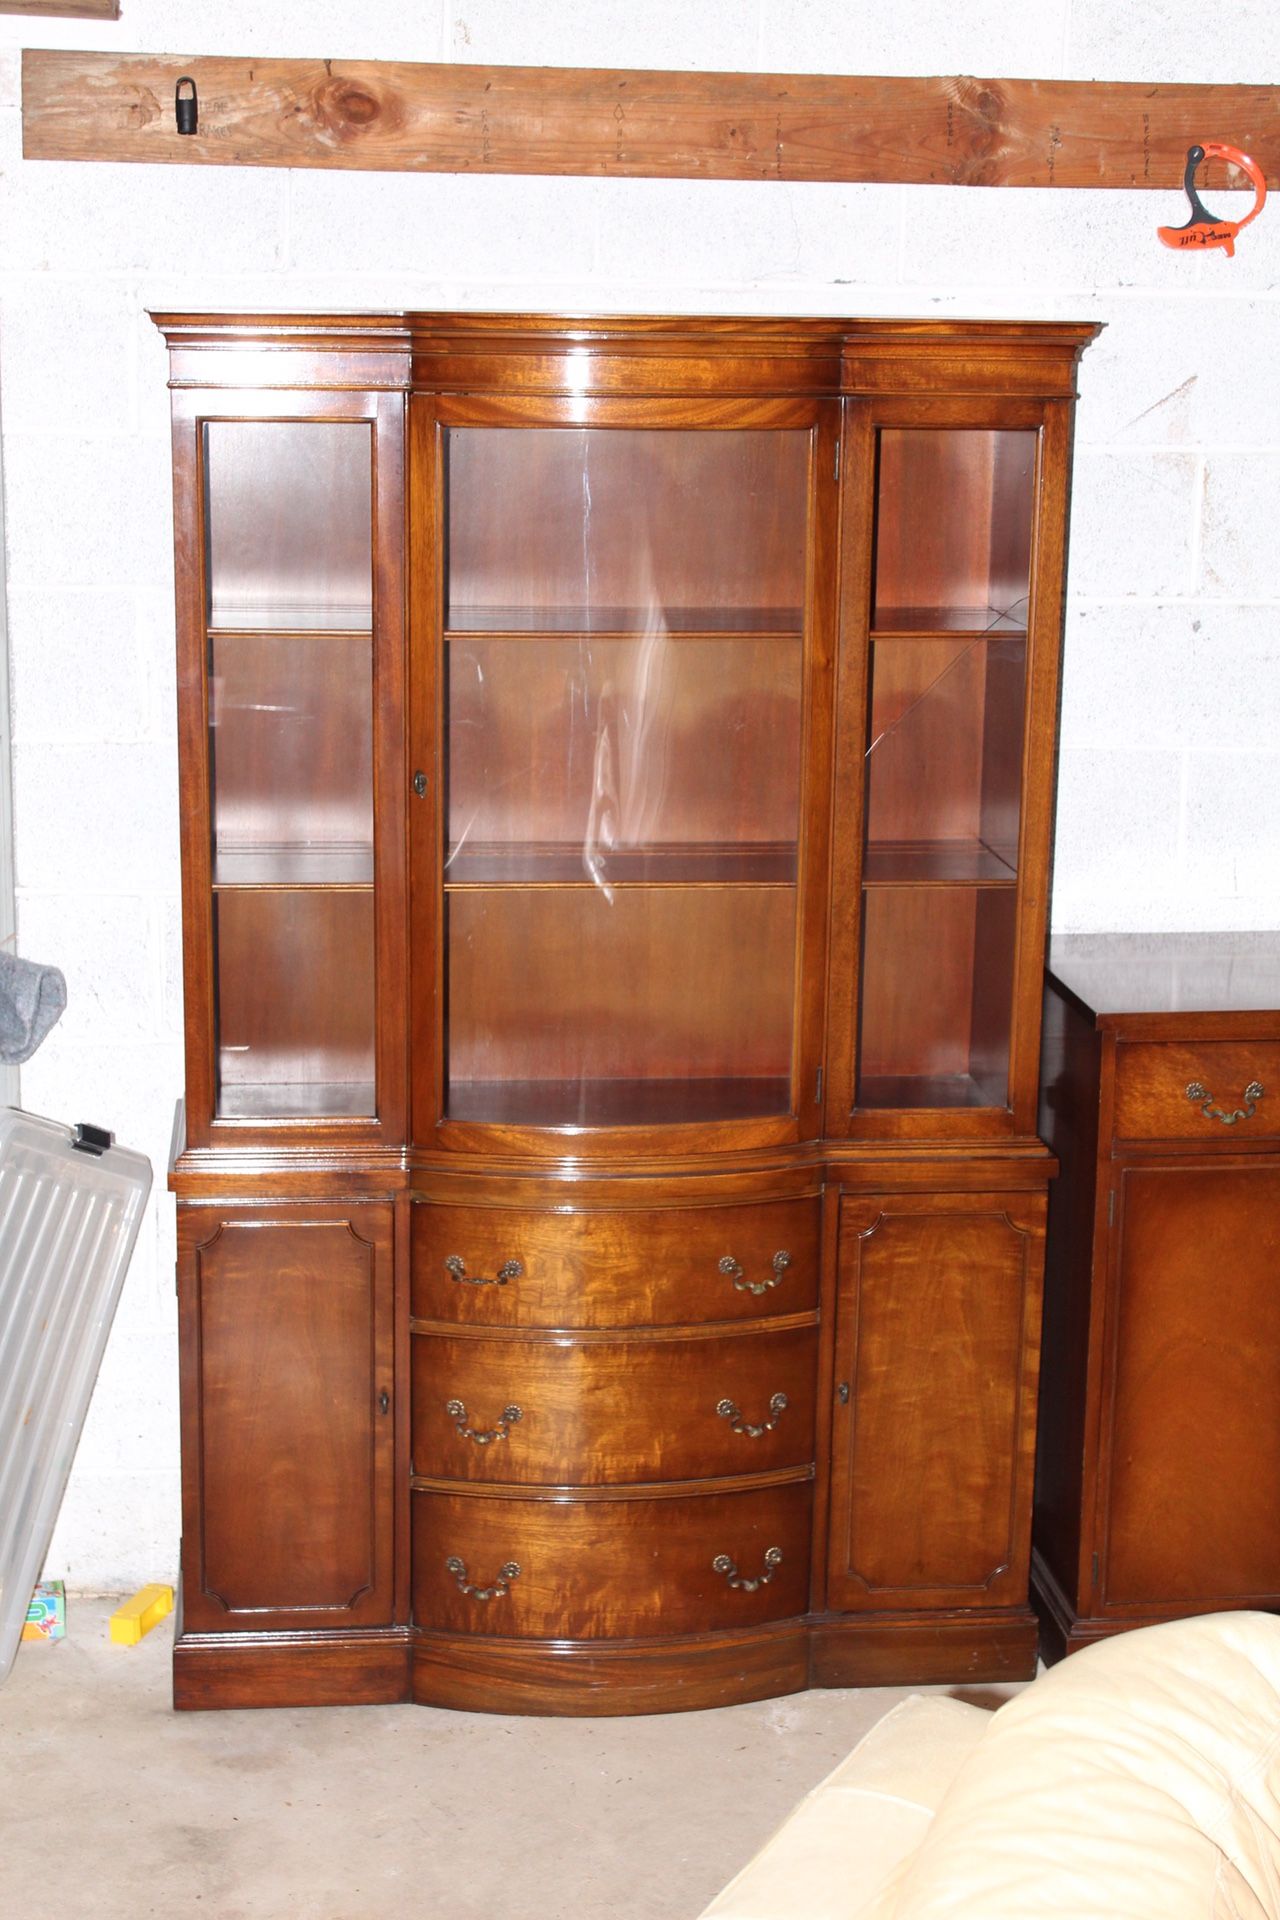 Antique Vintage China Cabinet-Excellent Condition- Partial Broken Glass- H 69.25”x D 16”x W 42”